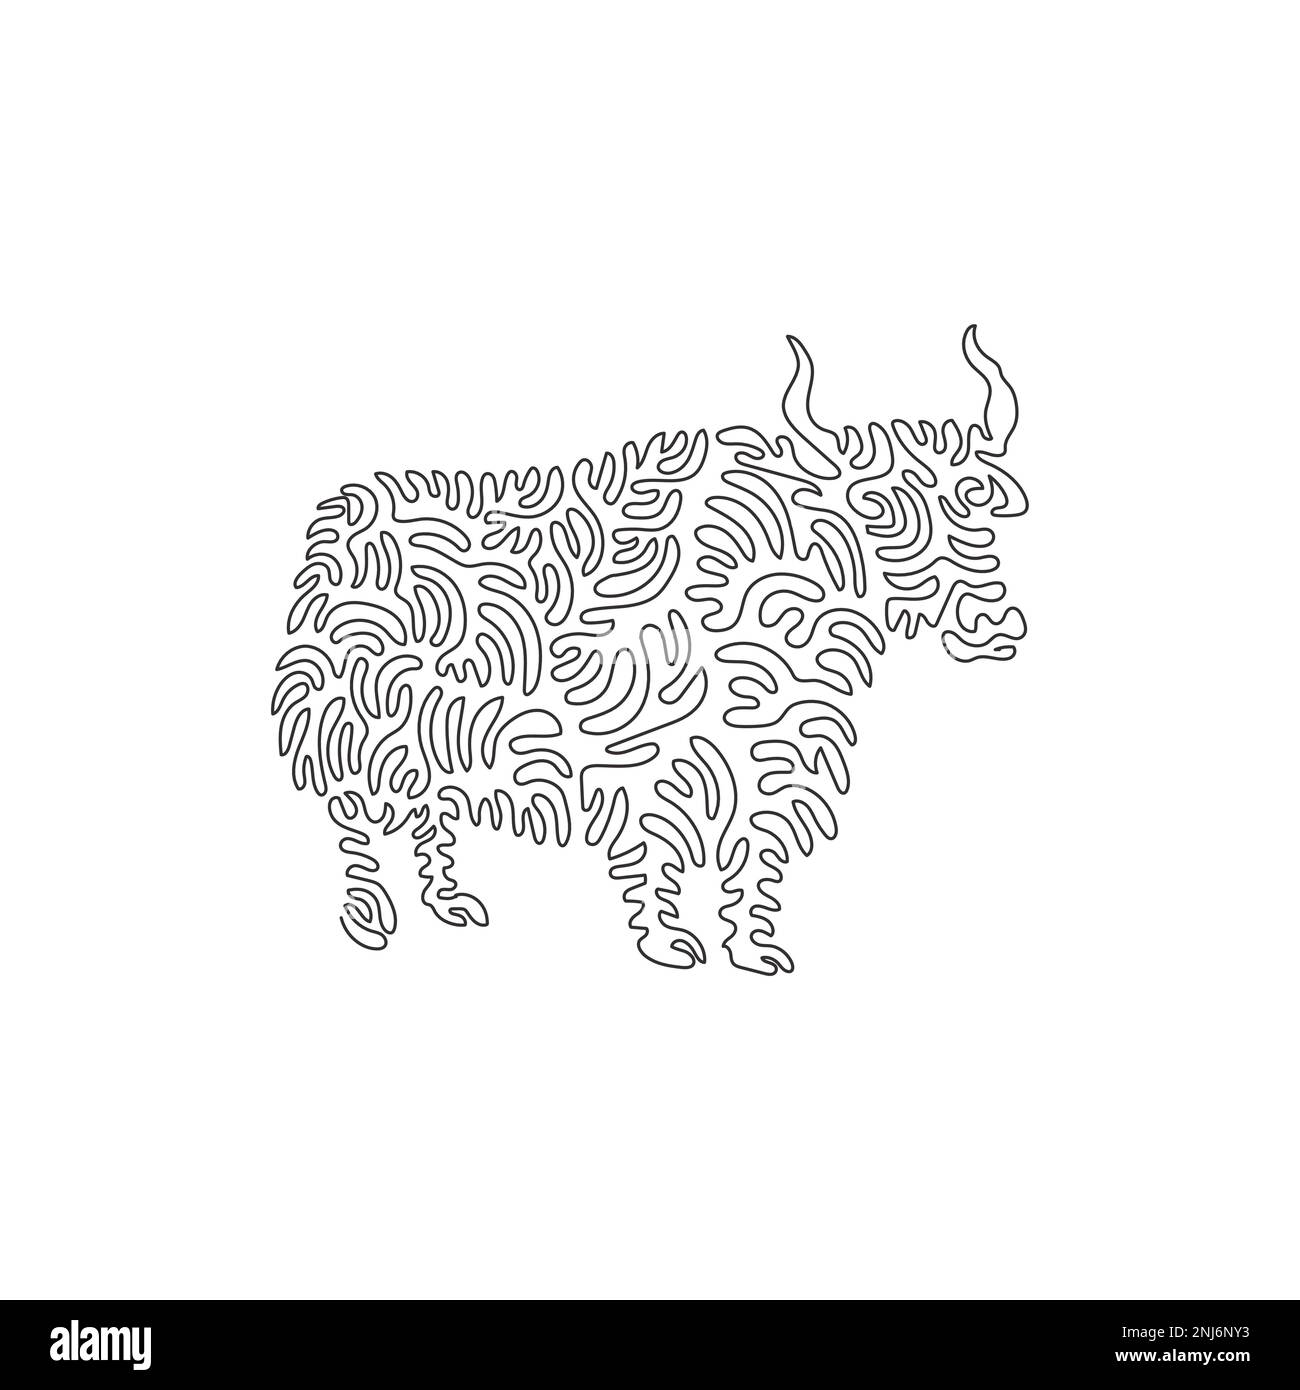 Un seul dessin d'une ligne de l'art abstrait yak à poil long Dessin en ligne continue dessin graphique dessin illustration vectorielle de yak fortement construit Illustration de Vecteur